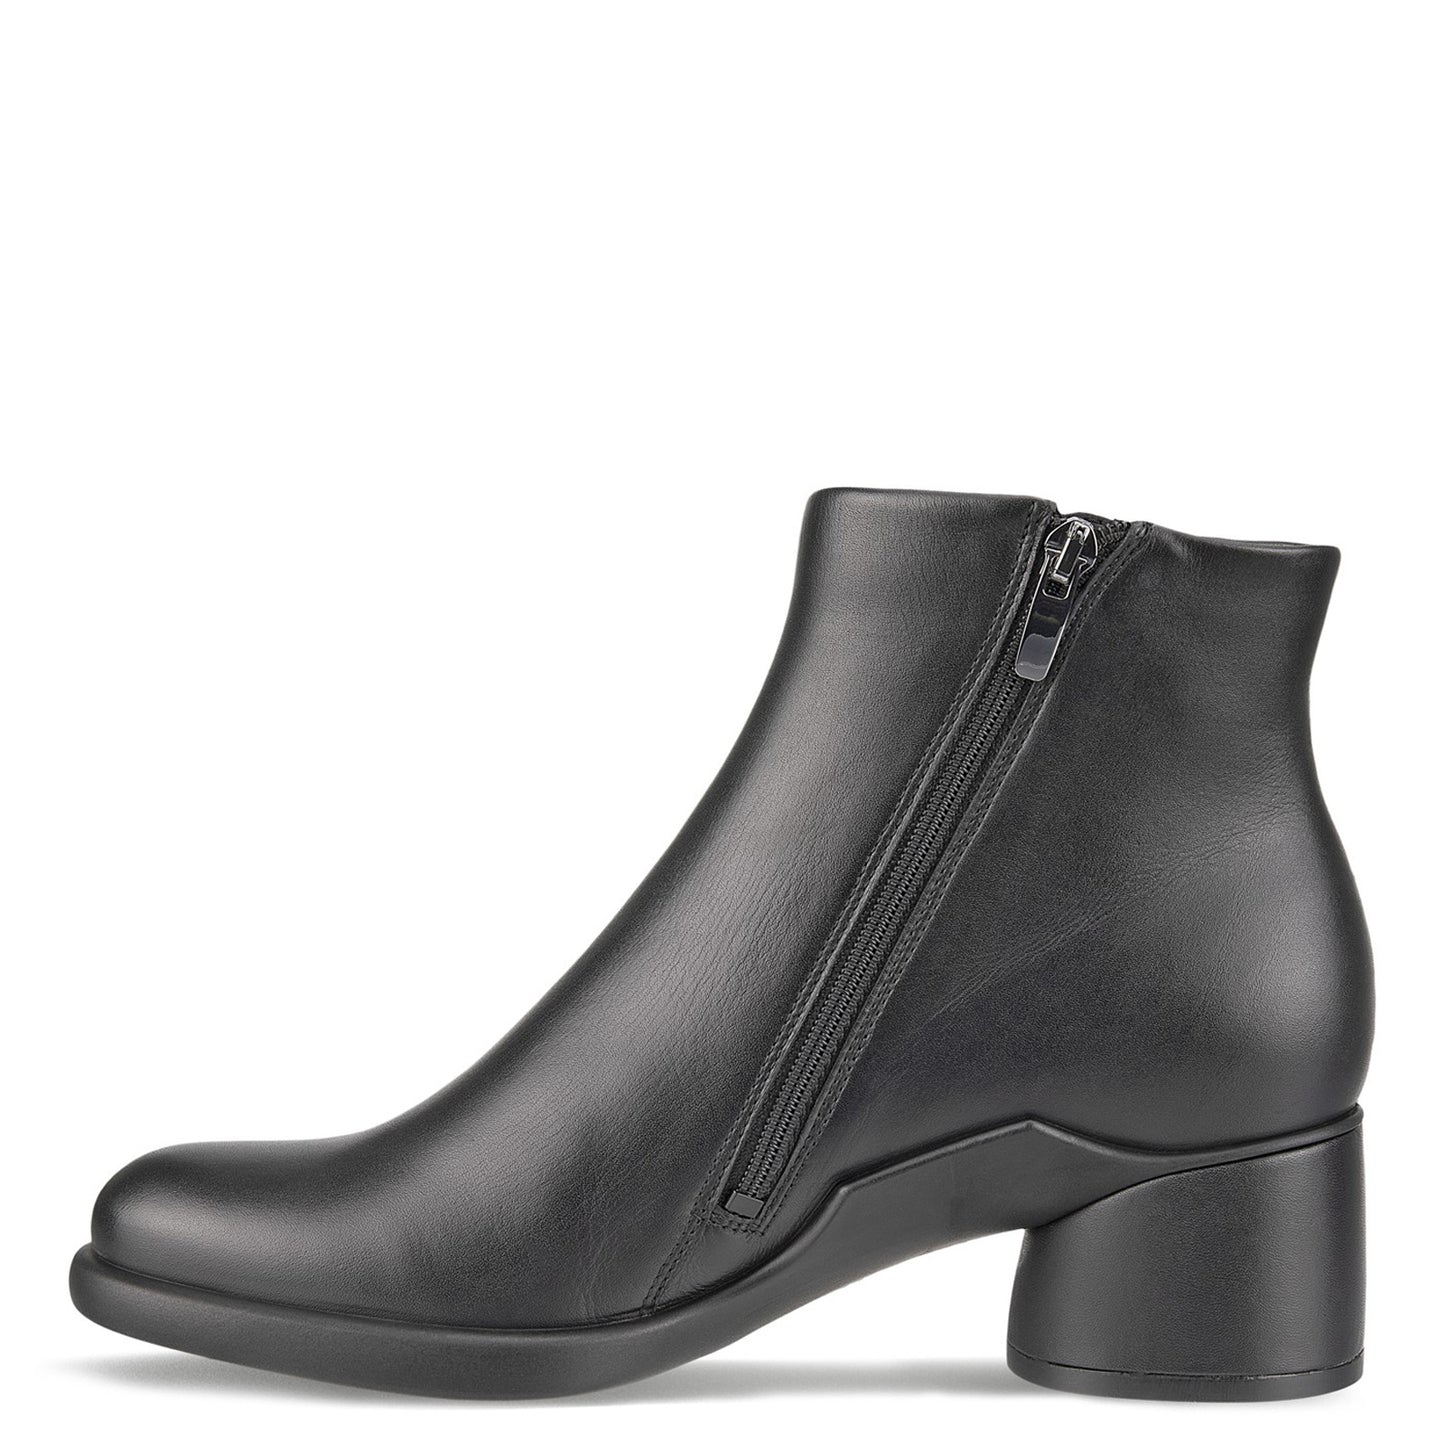 Peltz Shoes  Women's Ecco Sculpted LX Ankle Boot BLACK 222413-01001